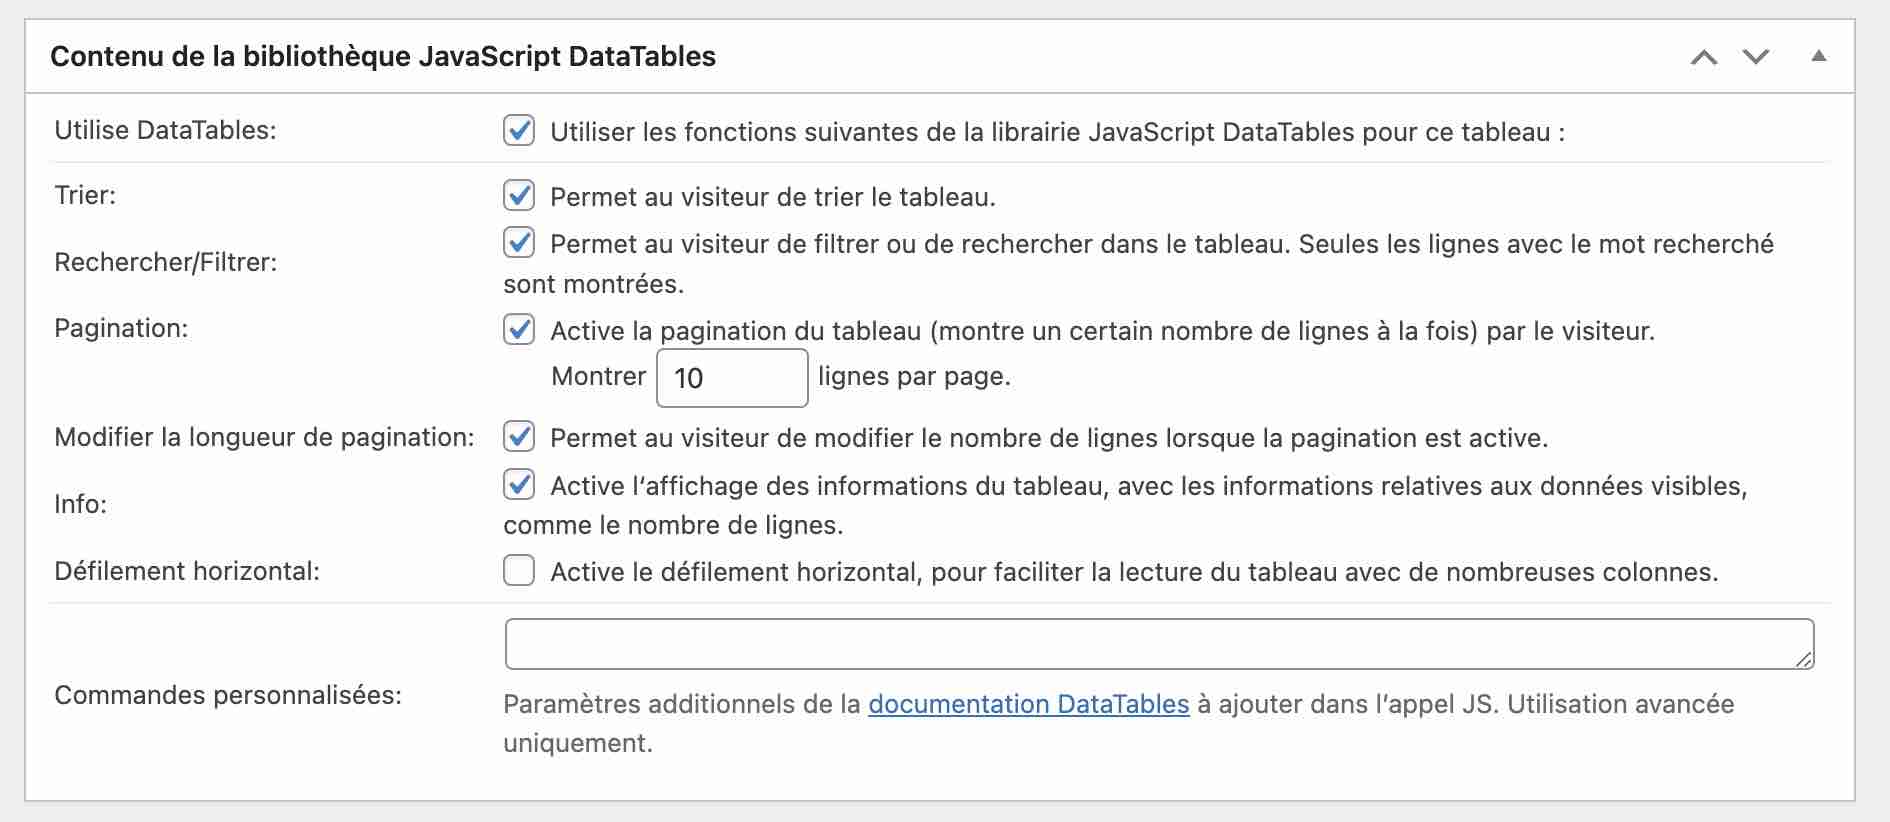 Le contenu de la bibliothèque JavaScript DataTables sur TablePress.